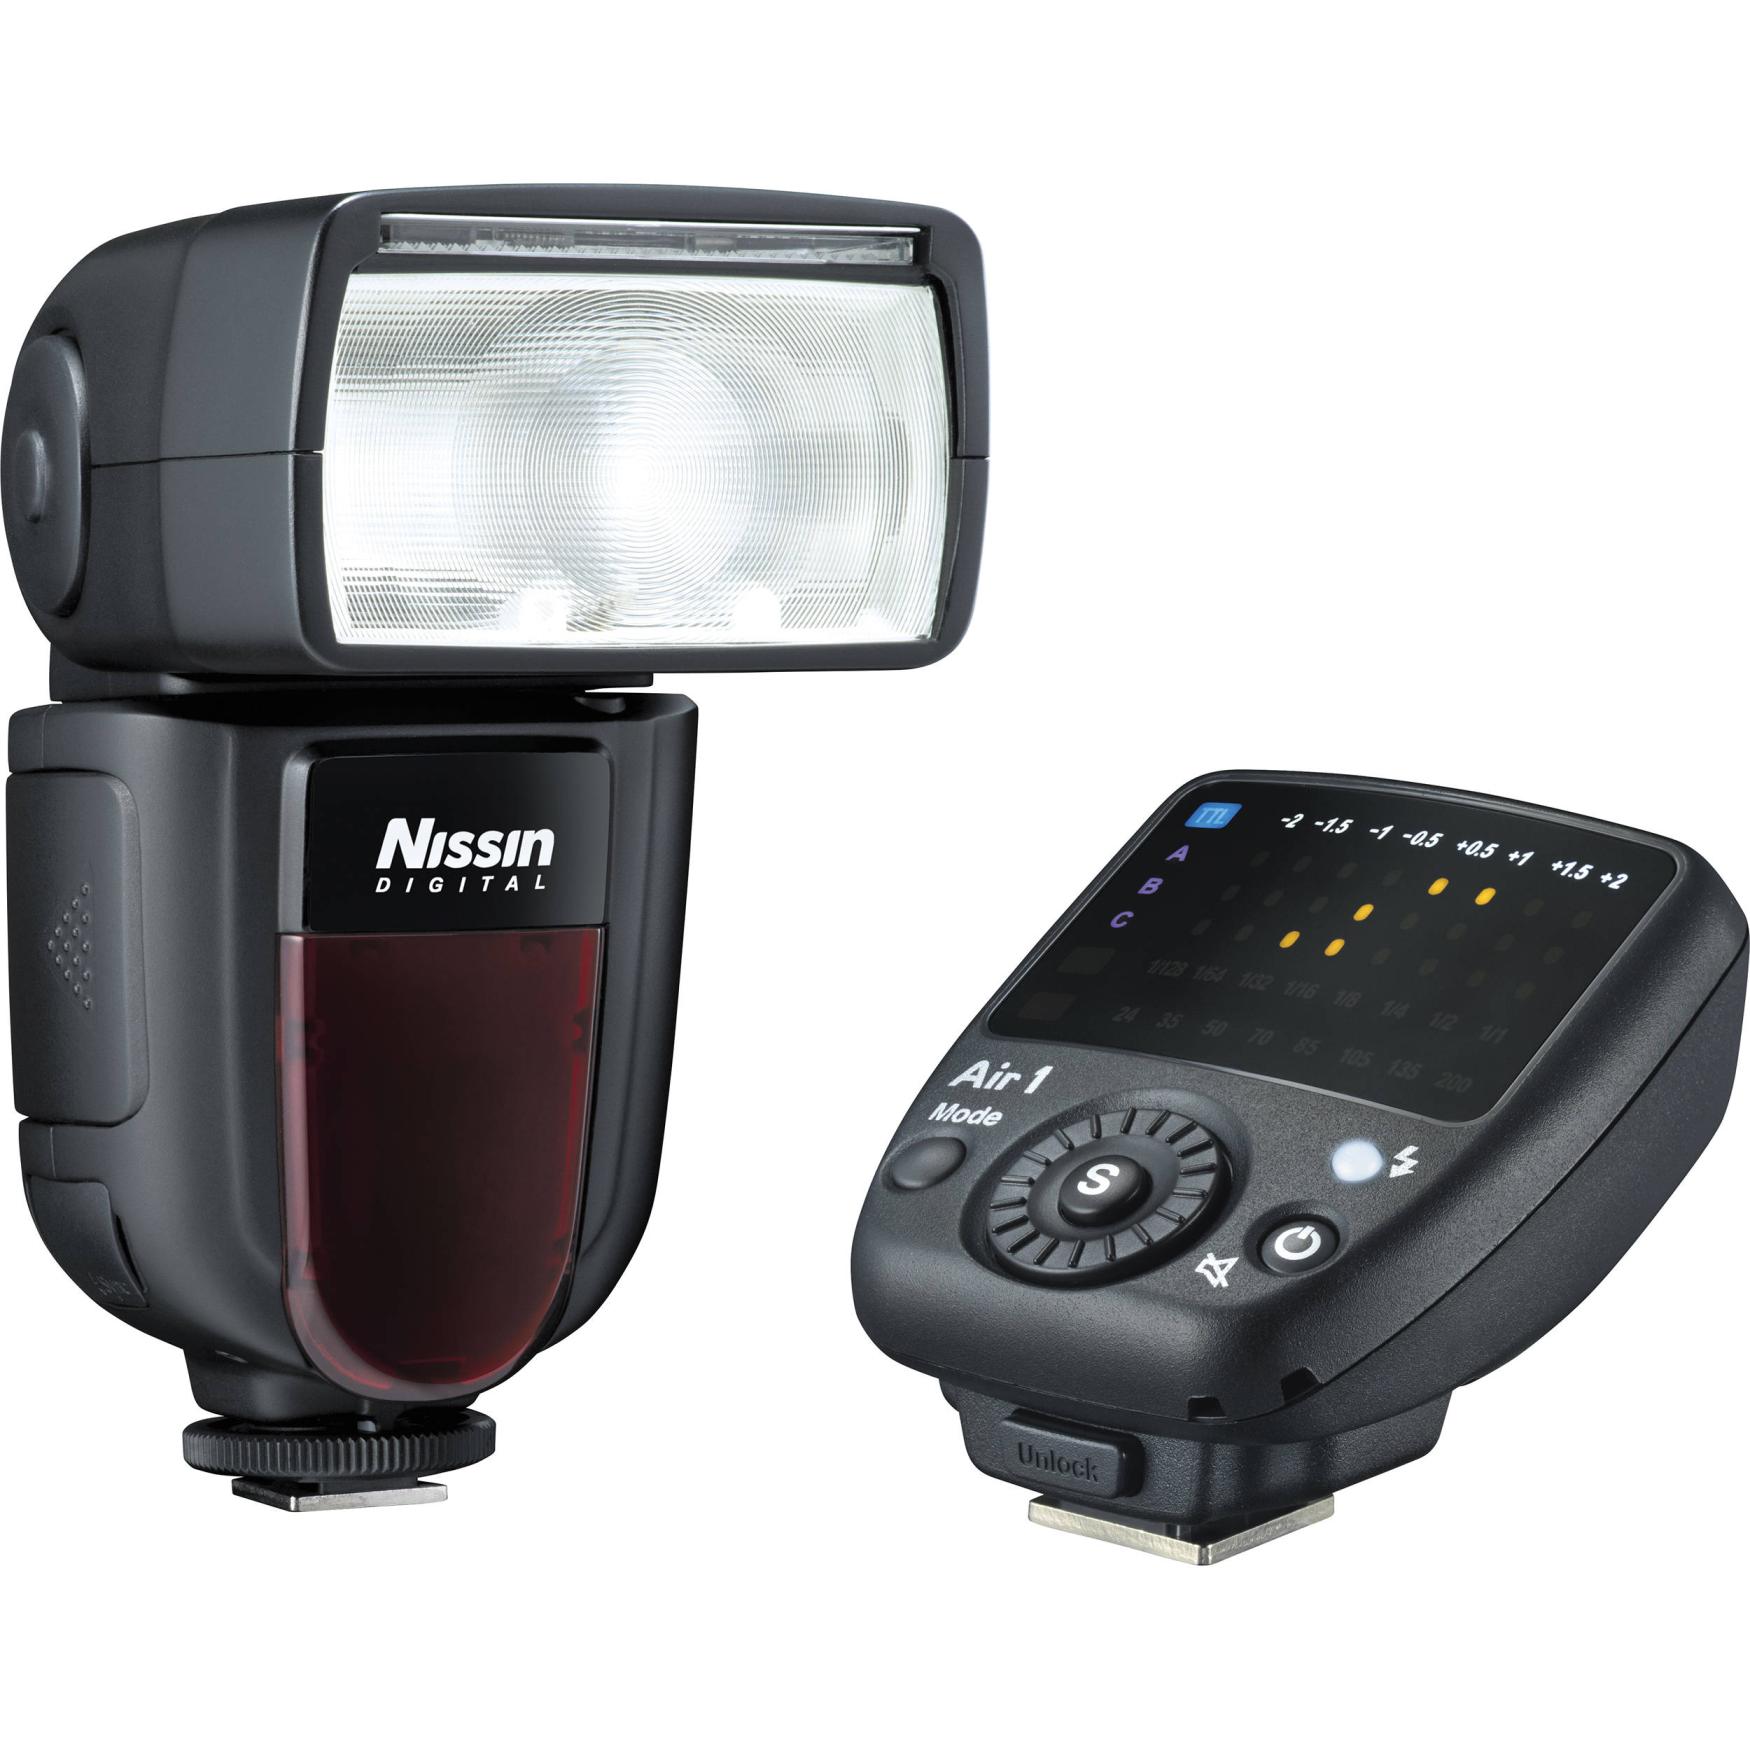 Nissin Di700 Air- Flashlight For Canon